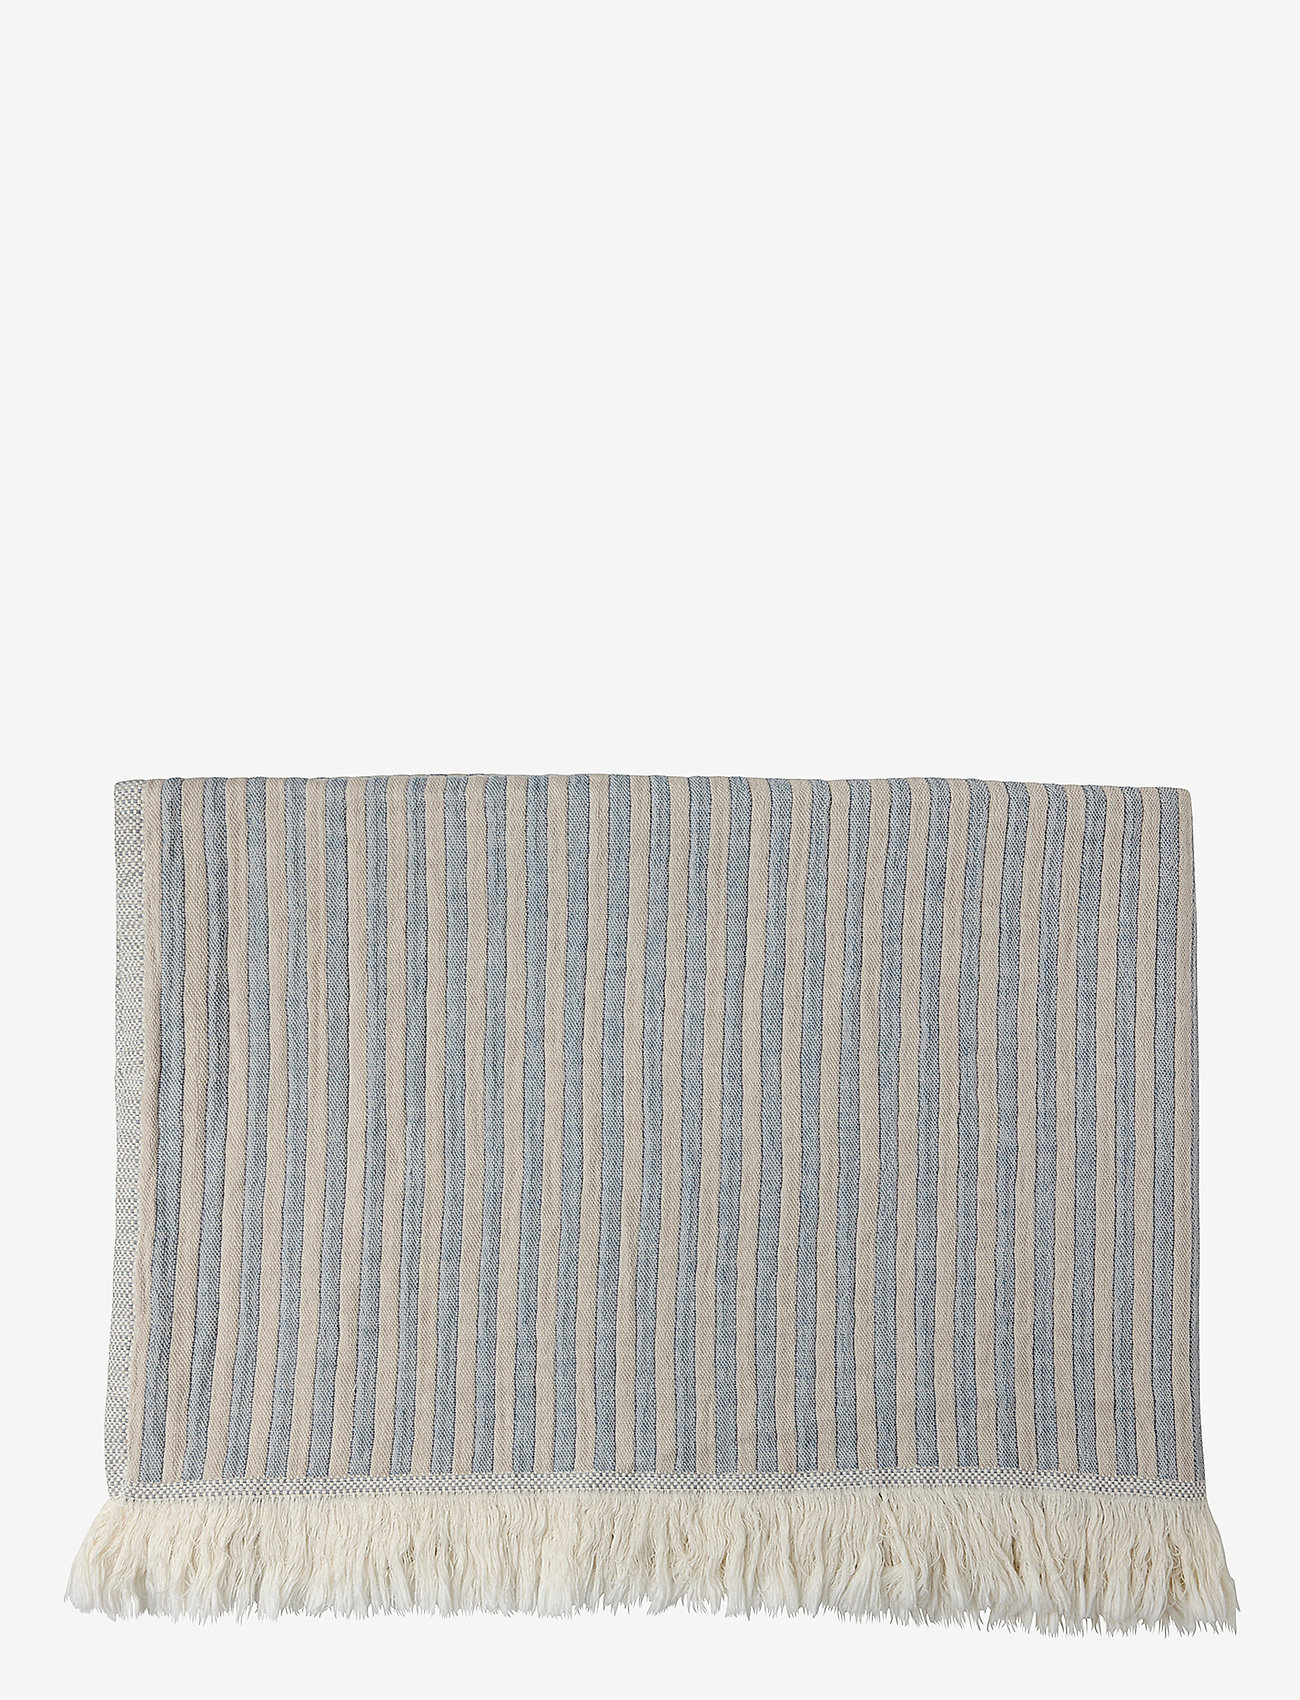 H. Skjalm P. - Indy Towel - blue/beige - 0